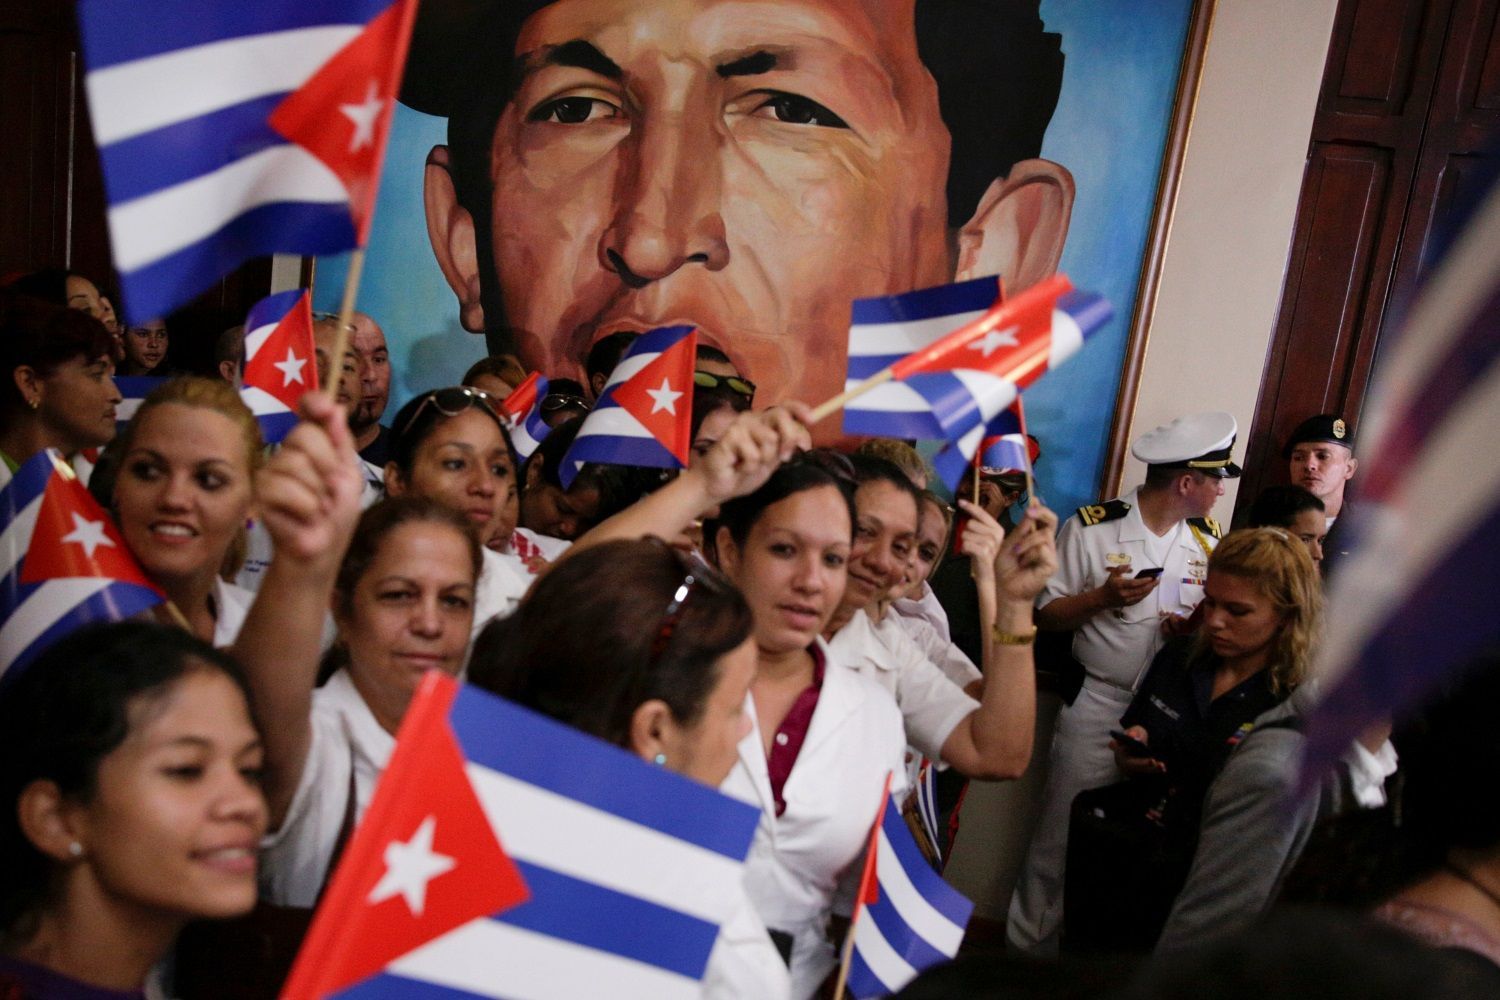 Foto: Kubánci truchlí i slaví. Podívejte se, jak prožívají Castrovu smrt